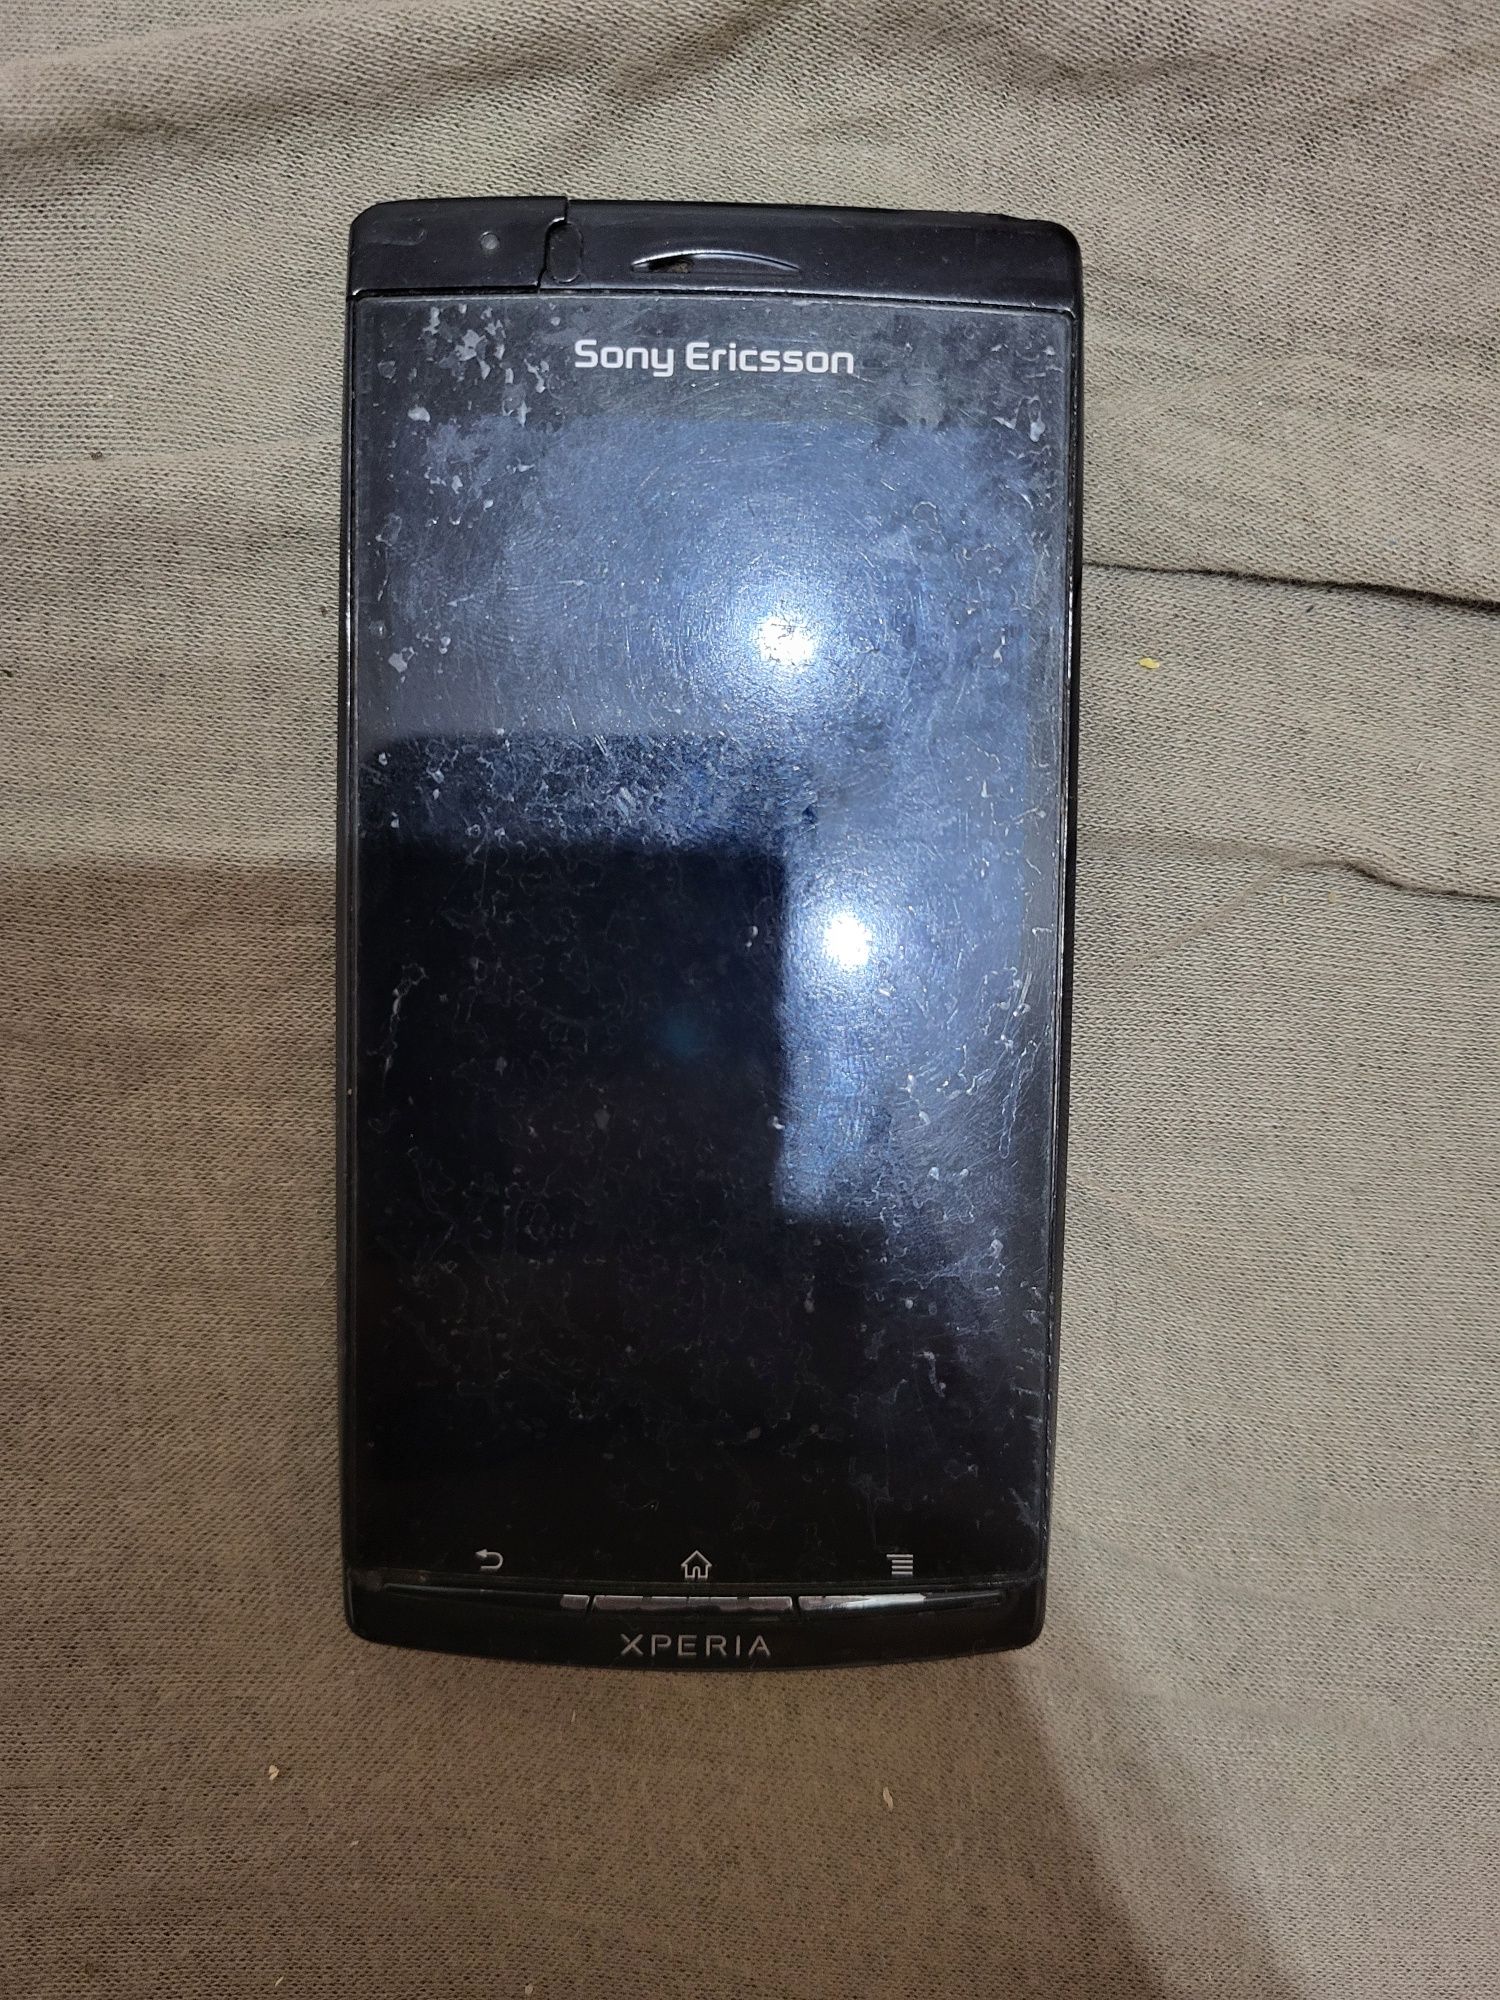 Telefon Sony Ericson Xperia działający